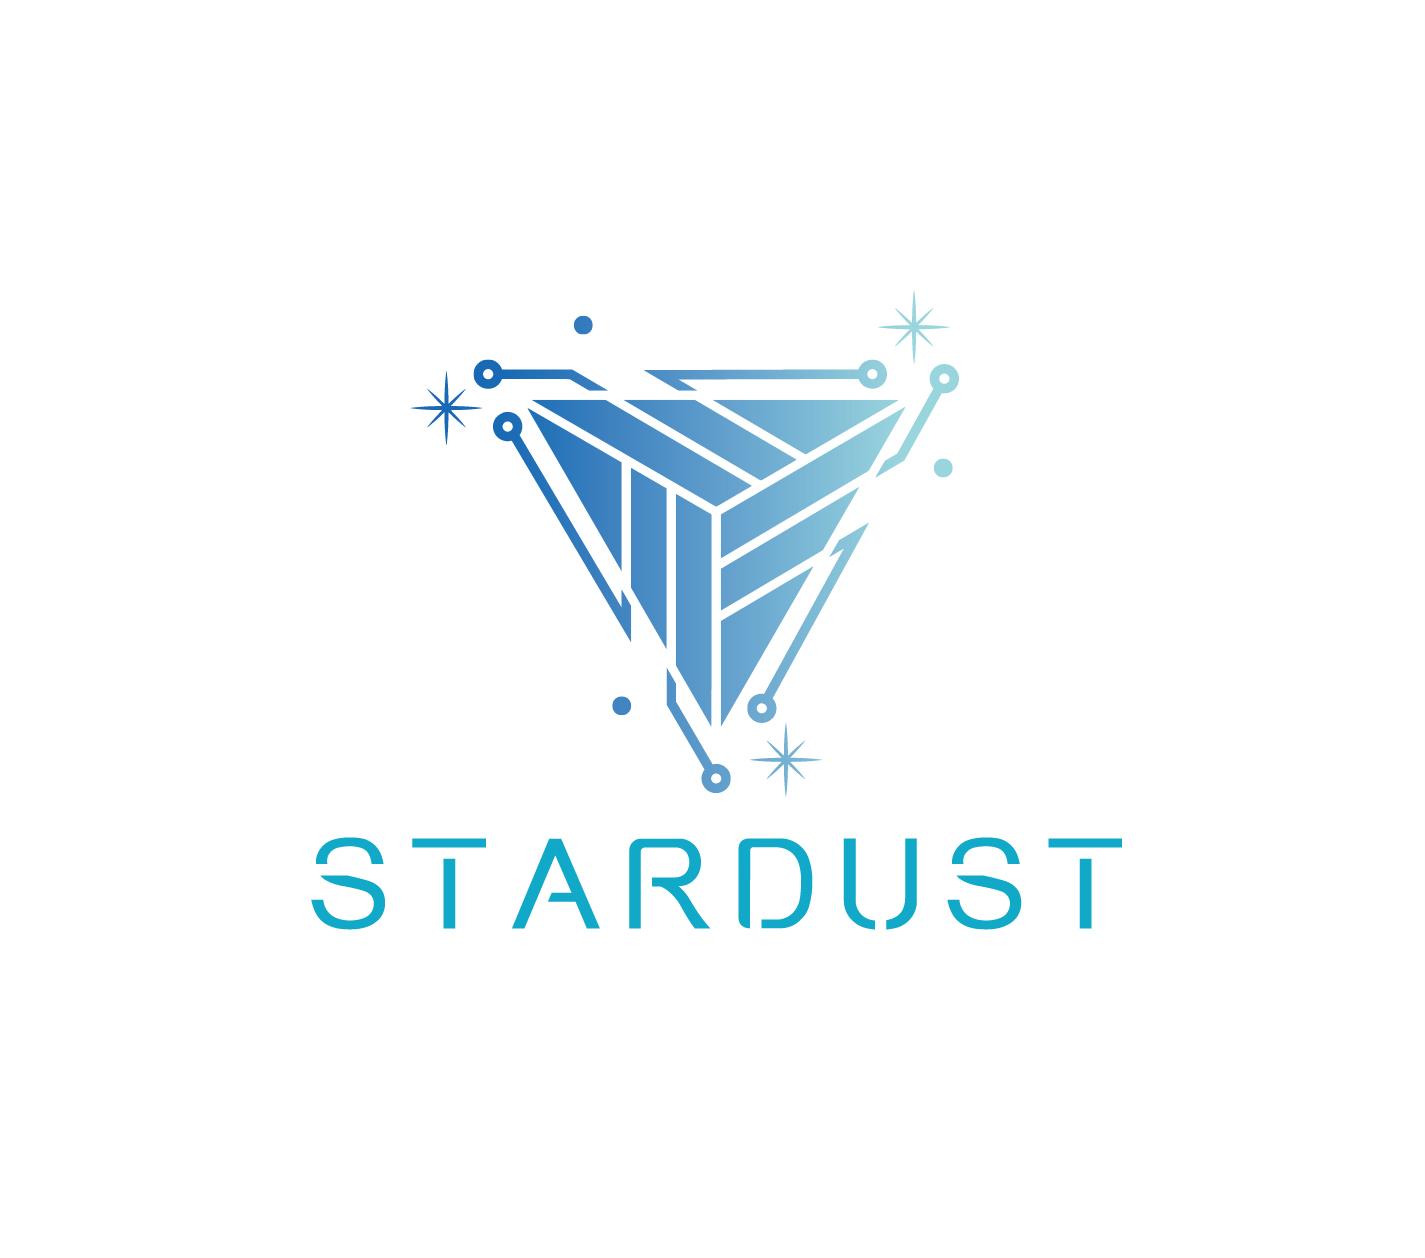 Stardust魔幻星塵百貨商店